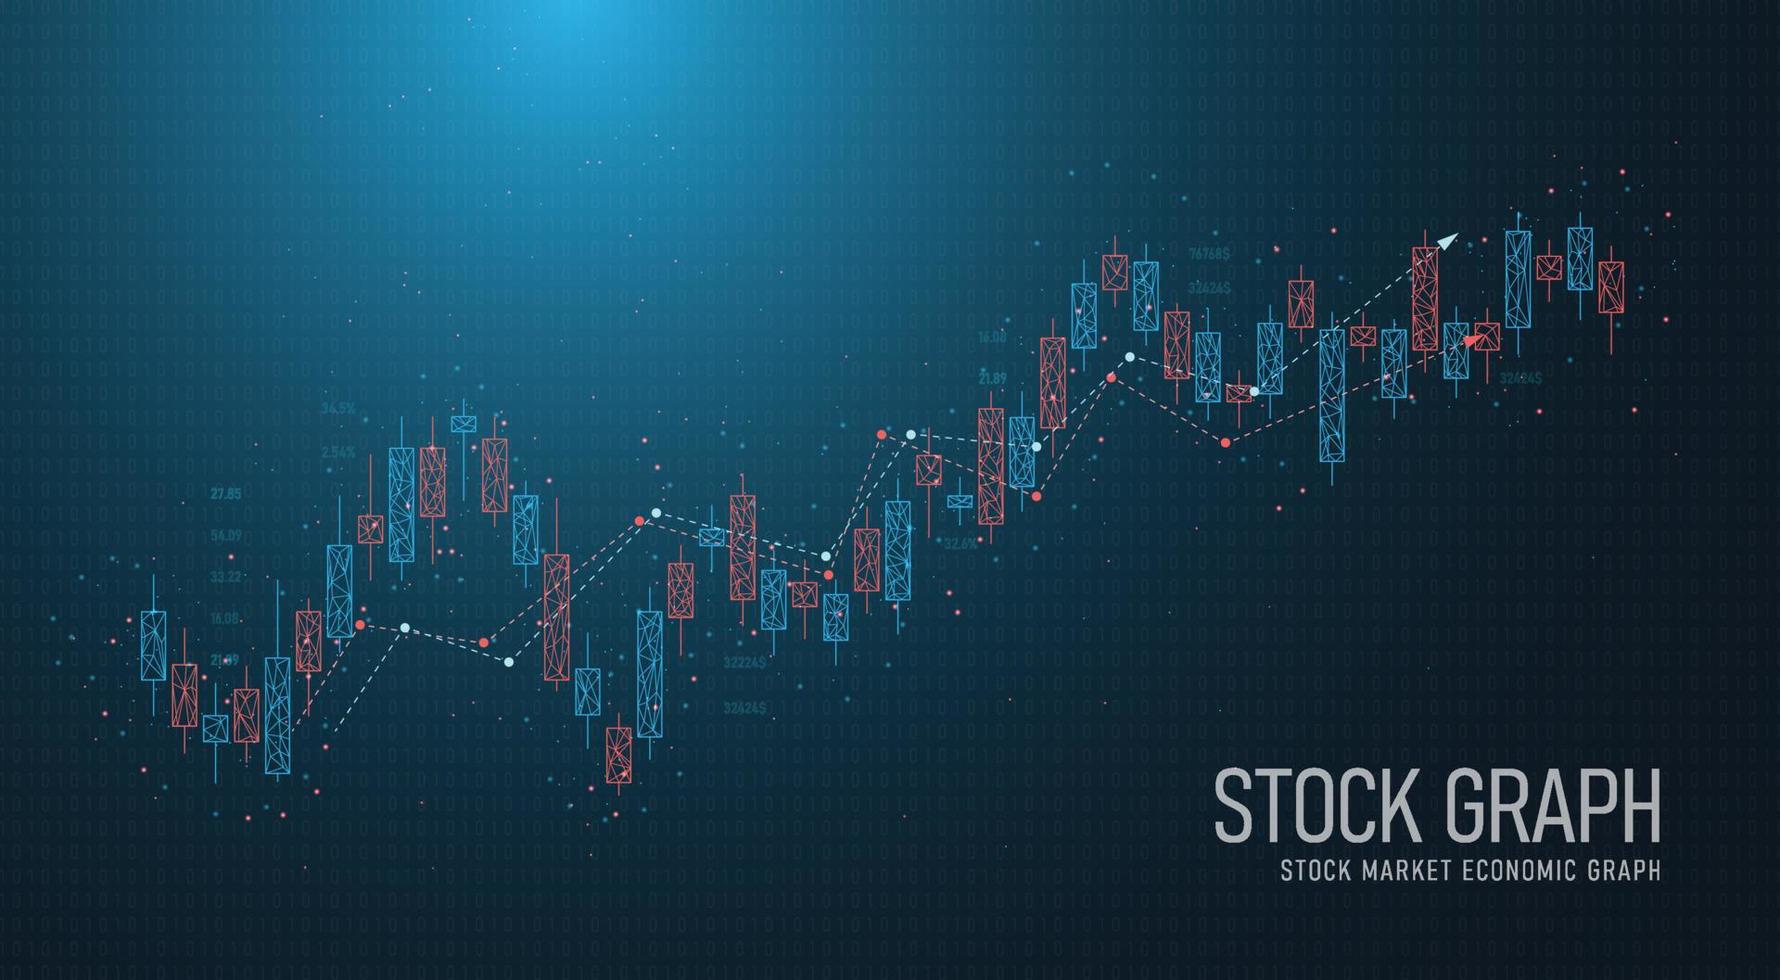 Chandelier de ligne géométrique de négociation boursière low poly avec graphique boursier des investisseurs du côté commercial image de conception de vecteur fond bleu